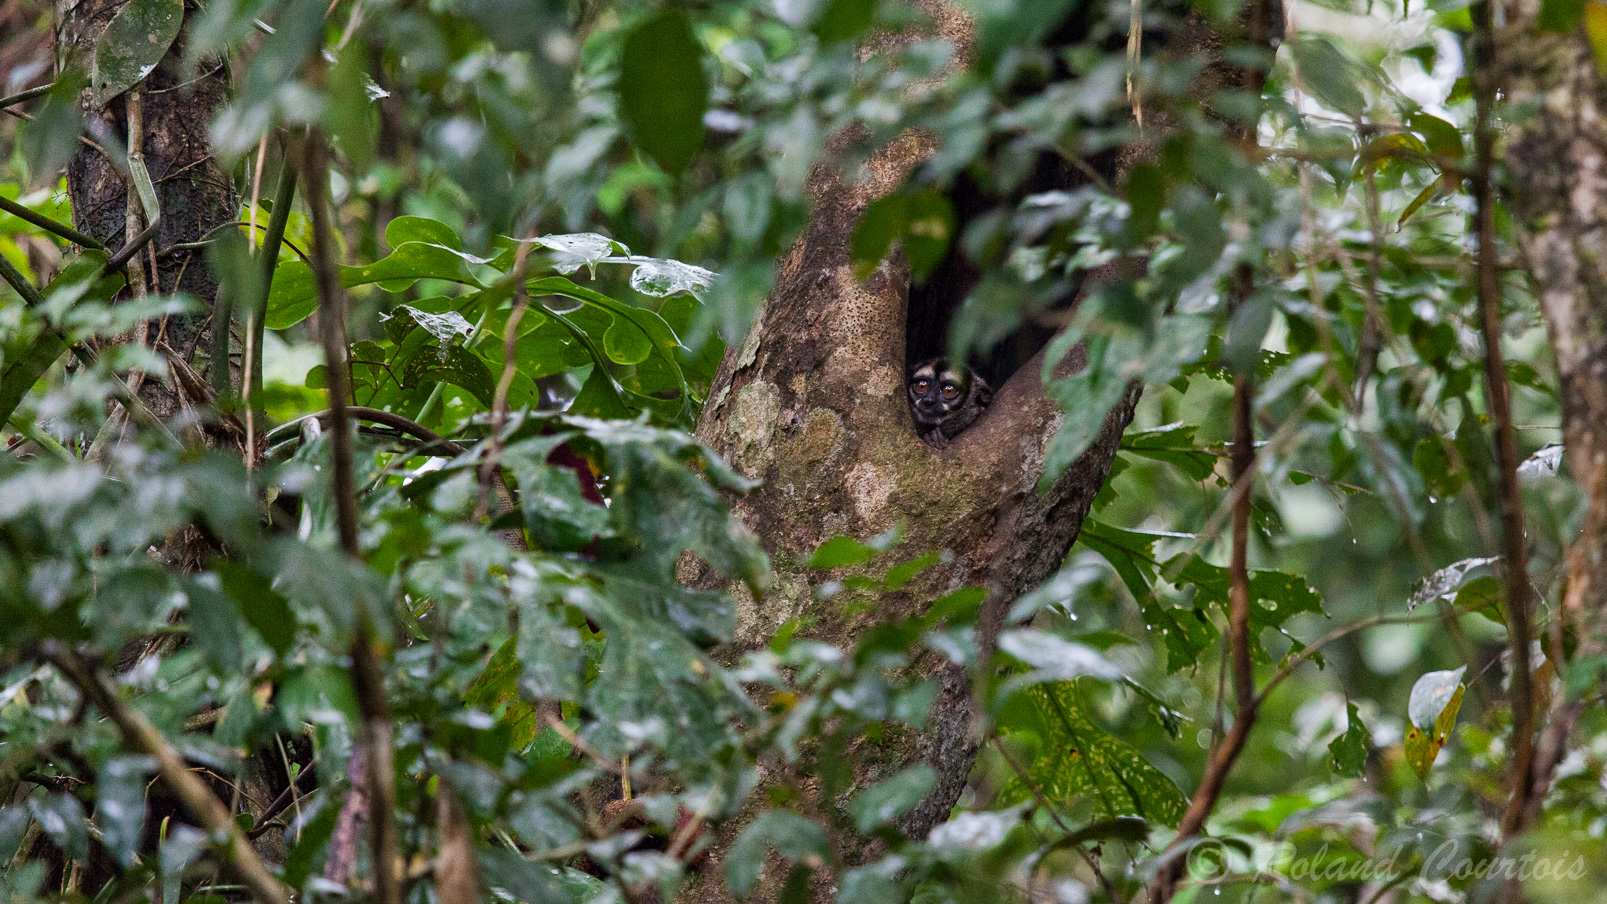 Douroucouli ou singe hibou nocturne logeant dans la cavité d'un arbre. Il a une vue monochrome.